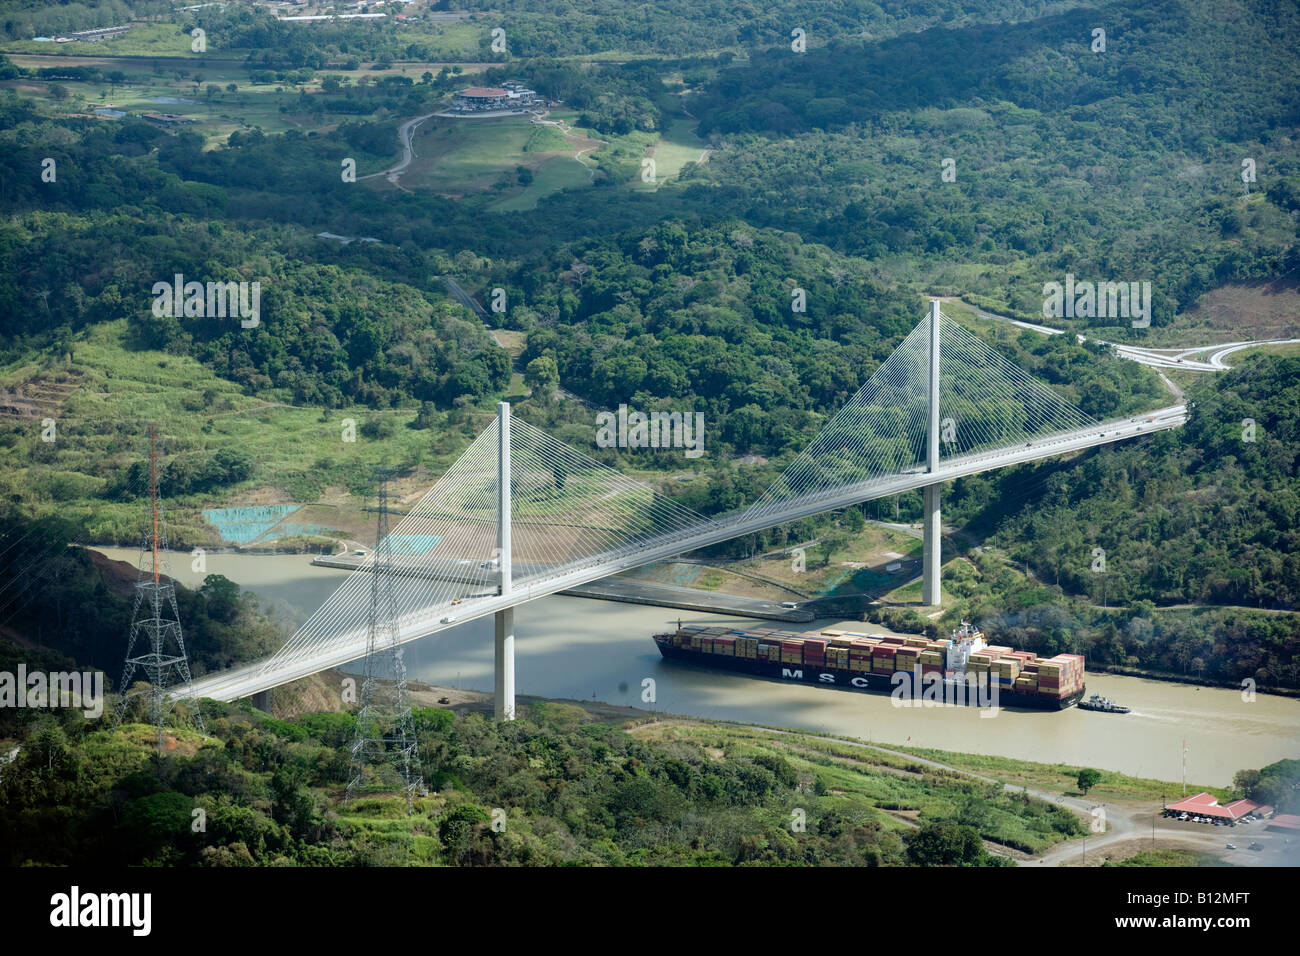 PANAMAX-CONTAINERSCHIFF IM CENTENNIAL MILLENNIUM BRIDGE CULEBRA GALLIARD SCHNITT PANAMAKANAL PANAMA Stockfoto